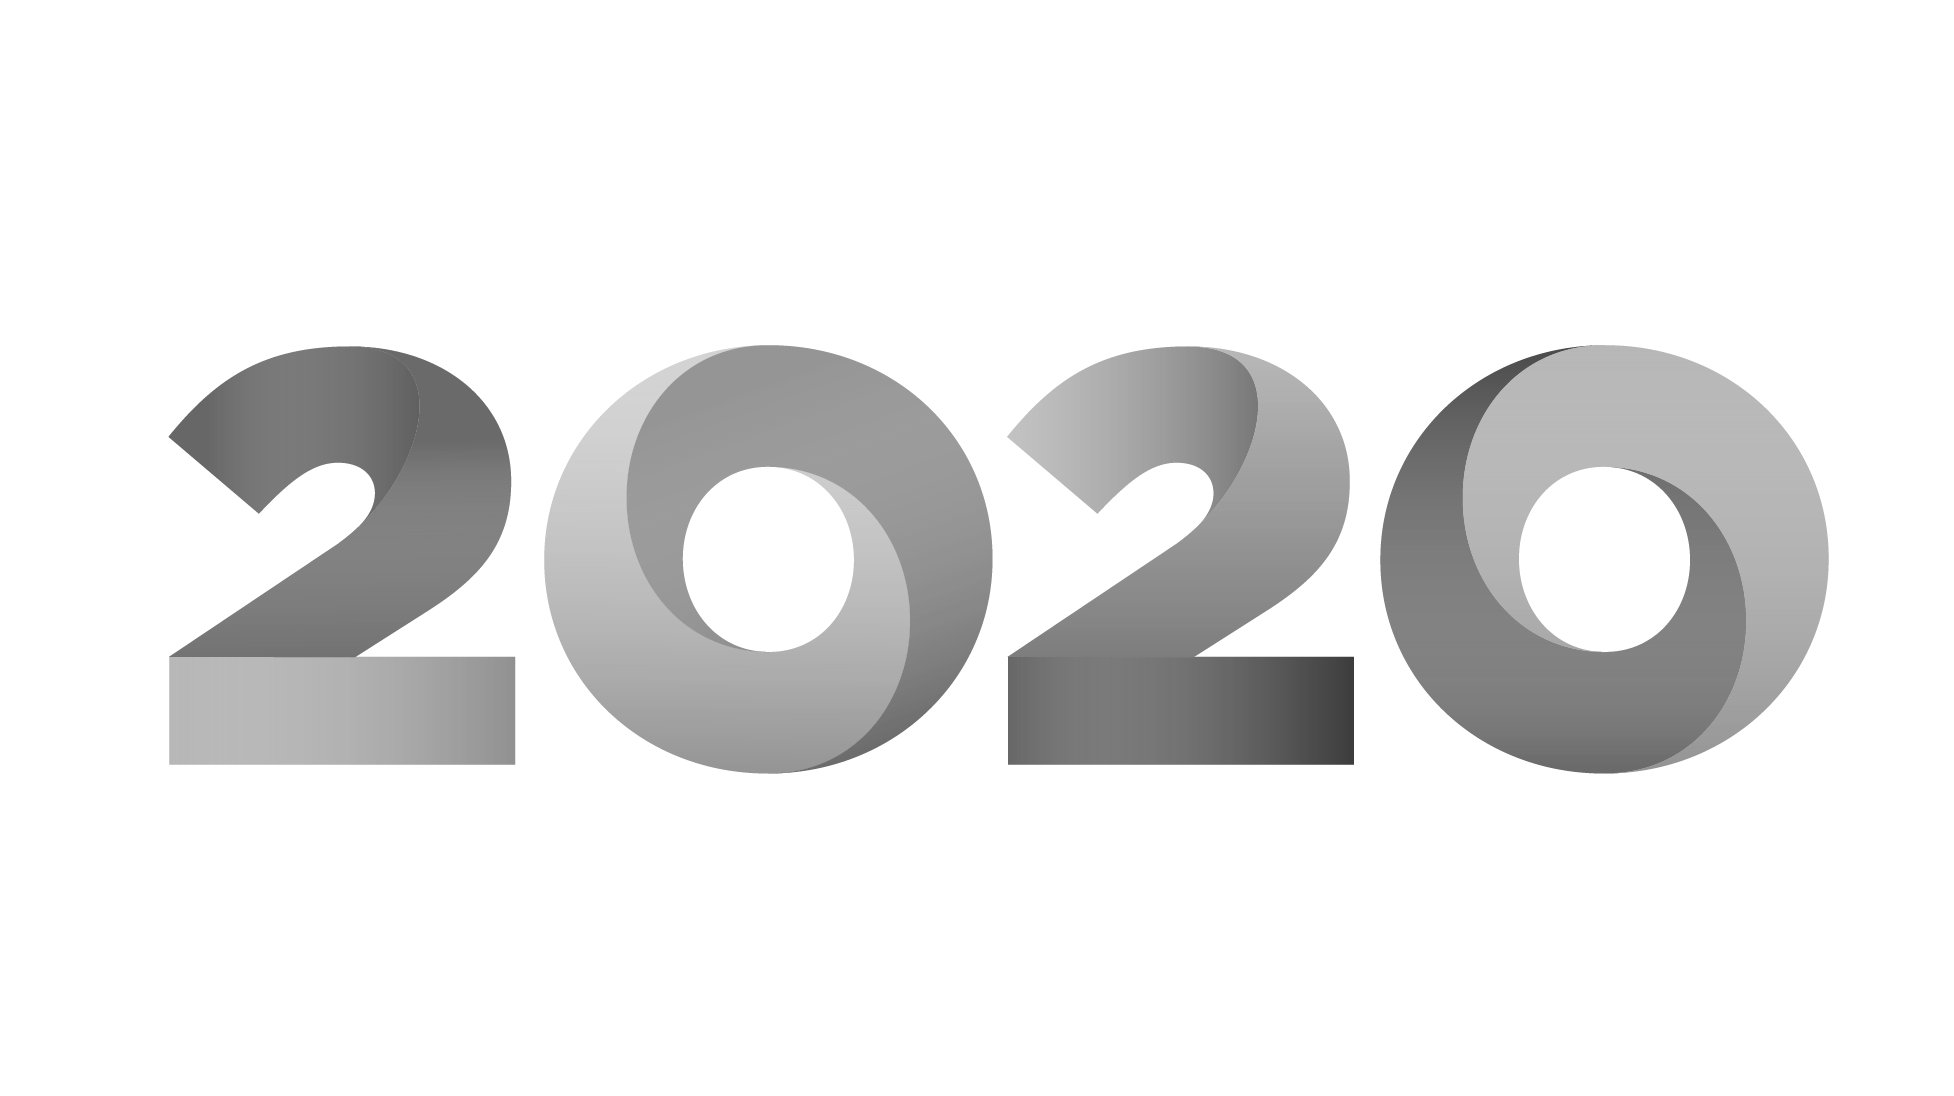 2020. 2020 Вектор. Цифры 2020. 2020 На прозрачном фоне. 2020 Надпись.